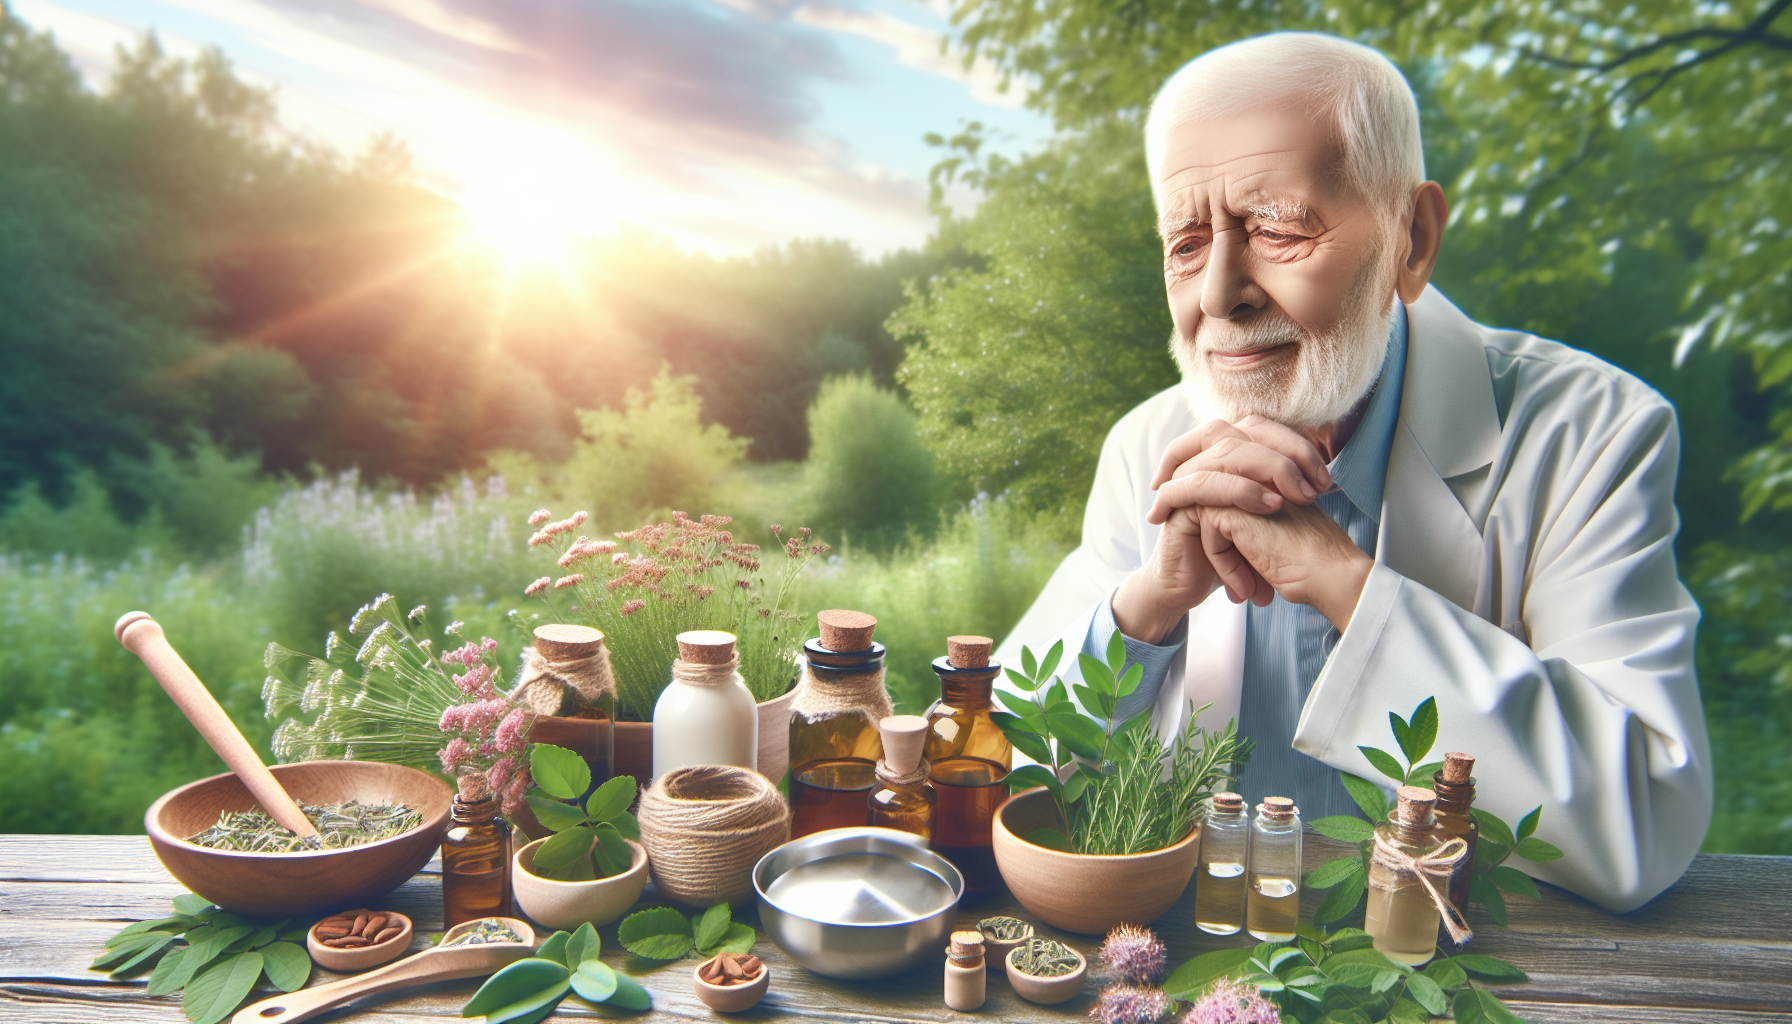 Alternativmedizin im Alter: Möglichkeiten und Grenzen
Demenz: Präventive natürliche Maßnahmen und Pflege